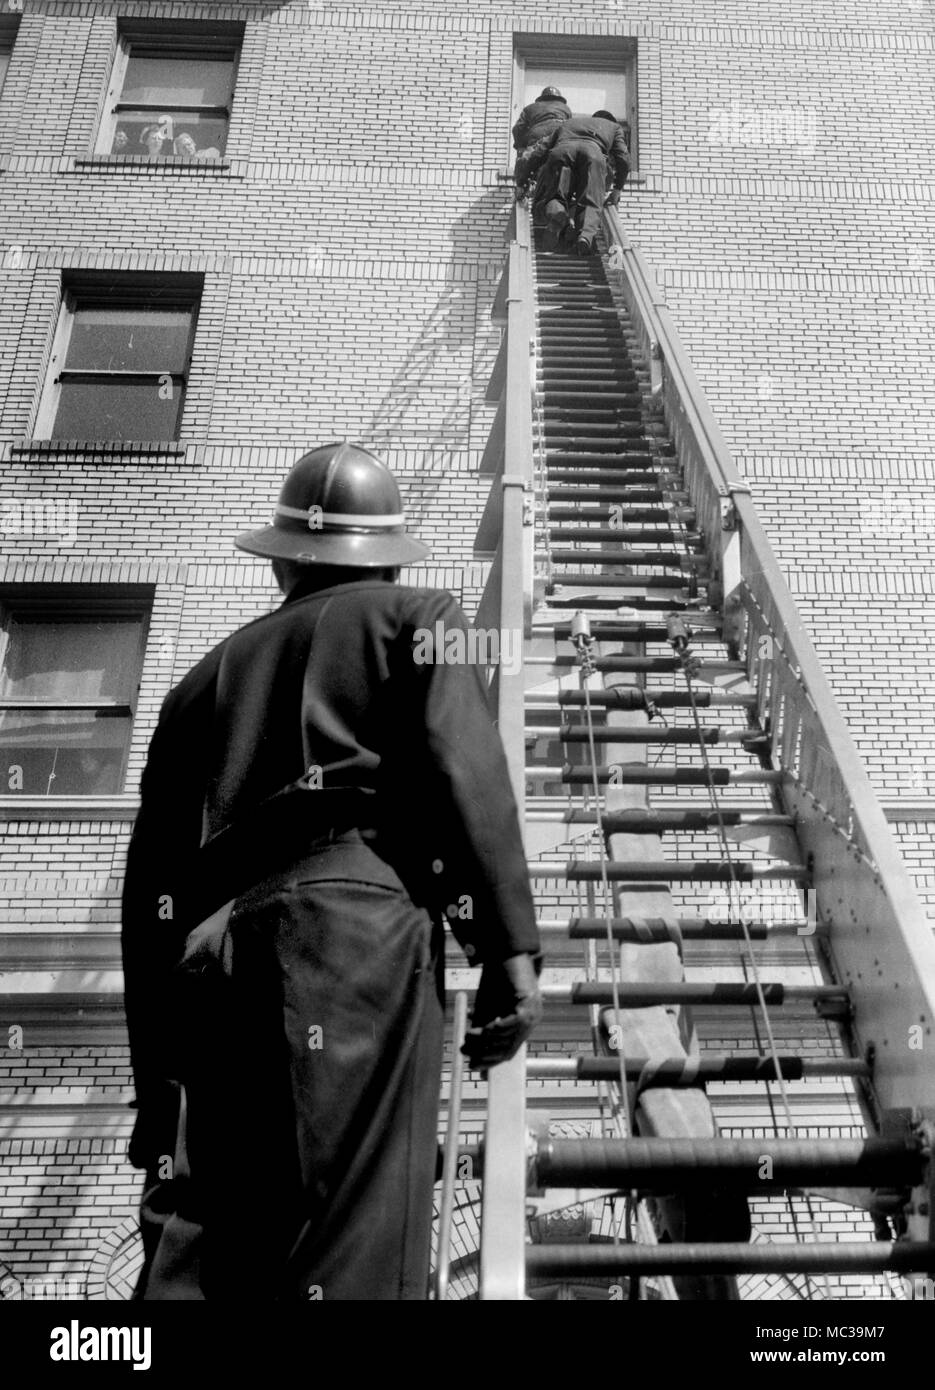 La pratique des pompiers sur une échelle d'incendie dans un hôpital de Californie, ca. 1965. Banque D'Images